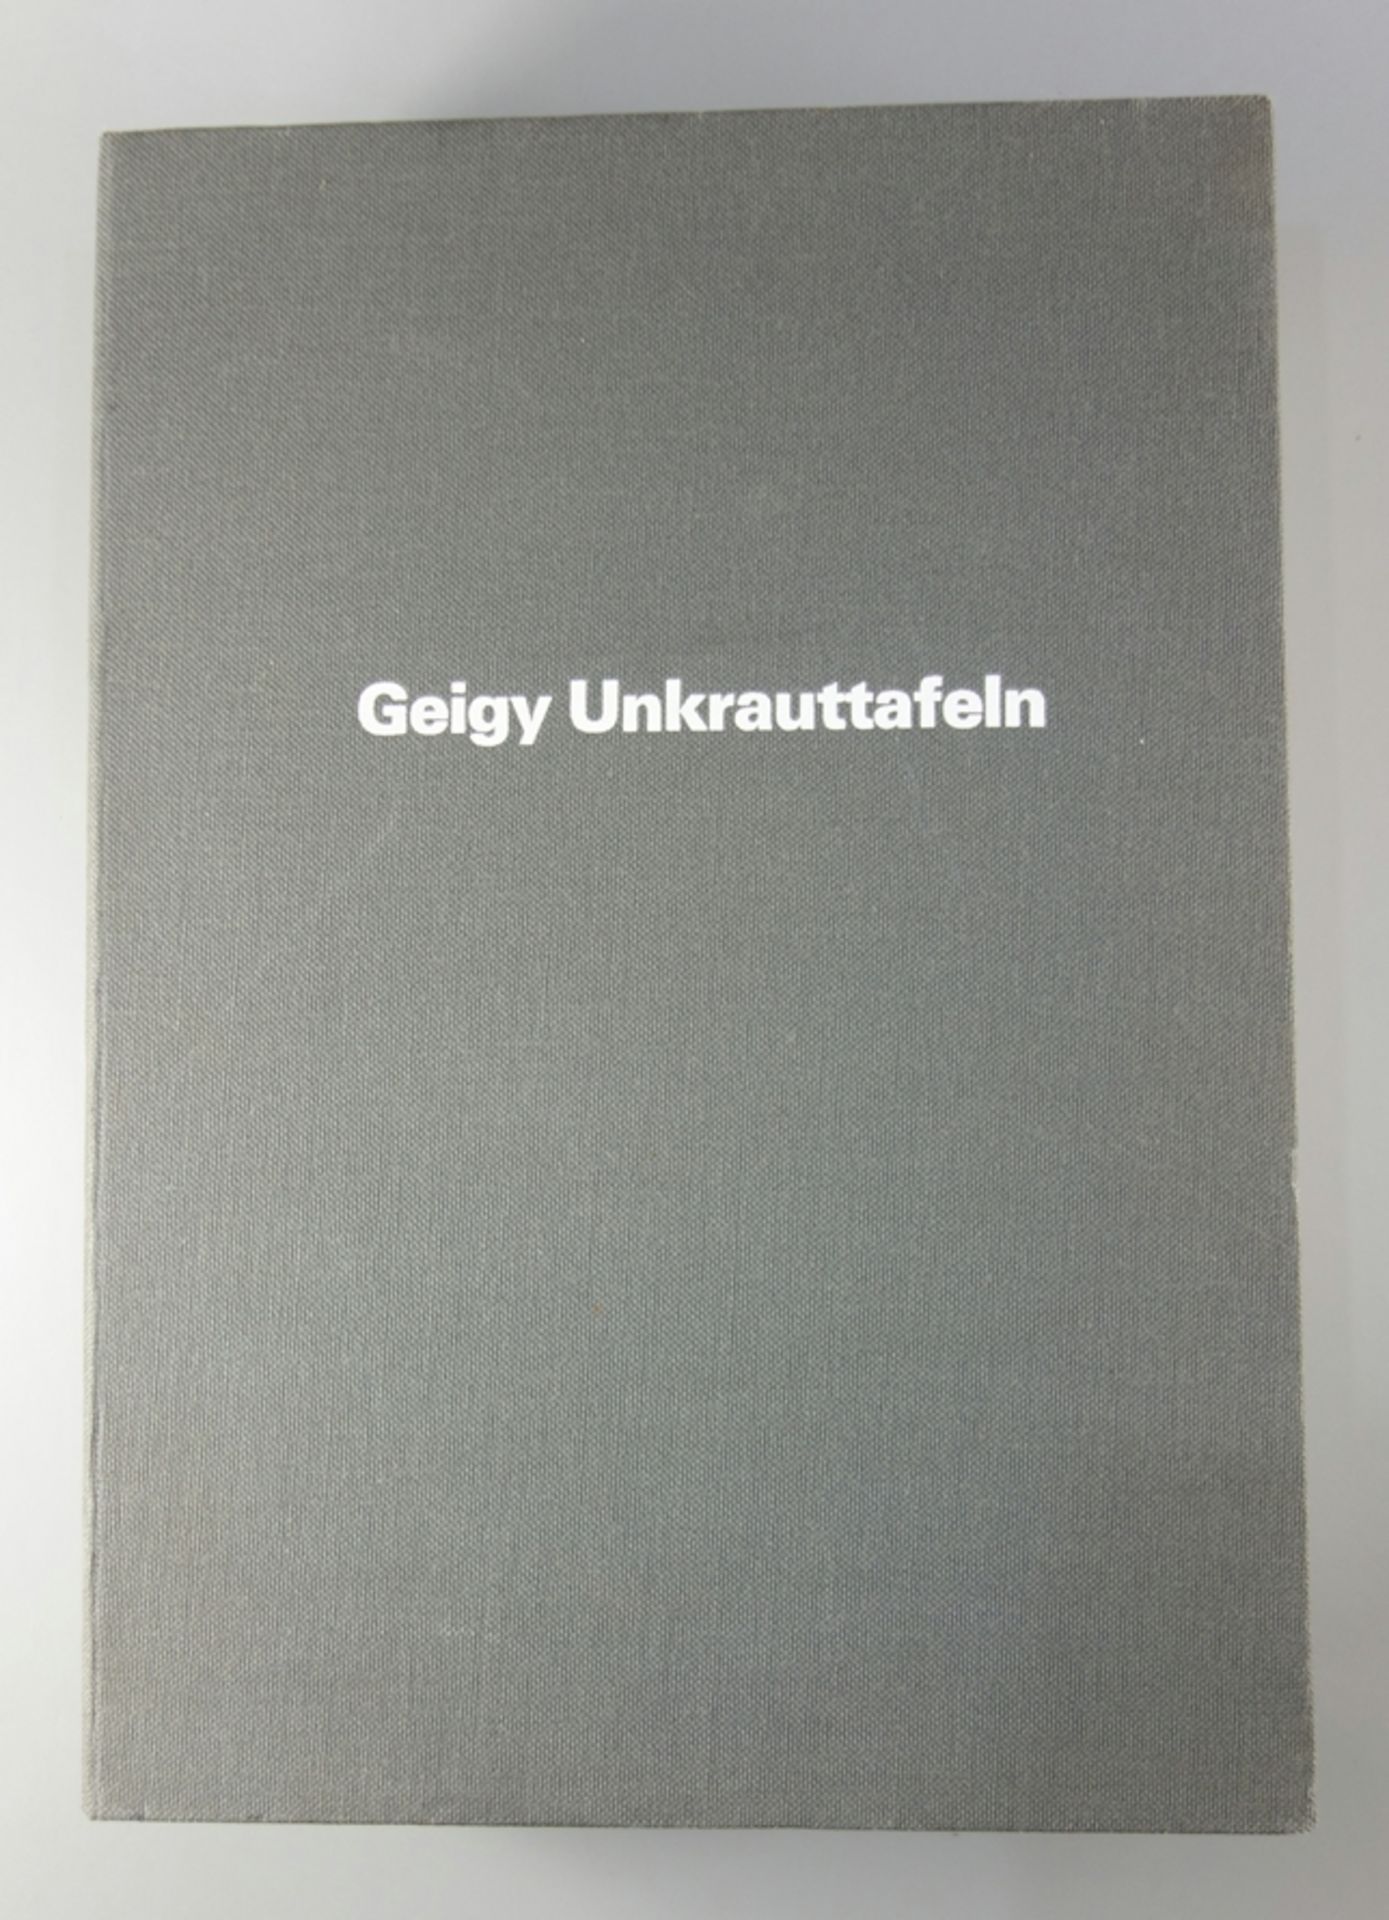 CIBA-GEiGY Unkrauttafeln, DOCUMENTA, Basel, Schweiz, 1968, synoptische Darstellung der Begleitflora - Bild 2 aus 5